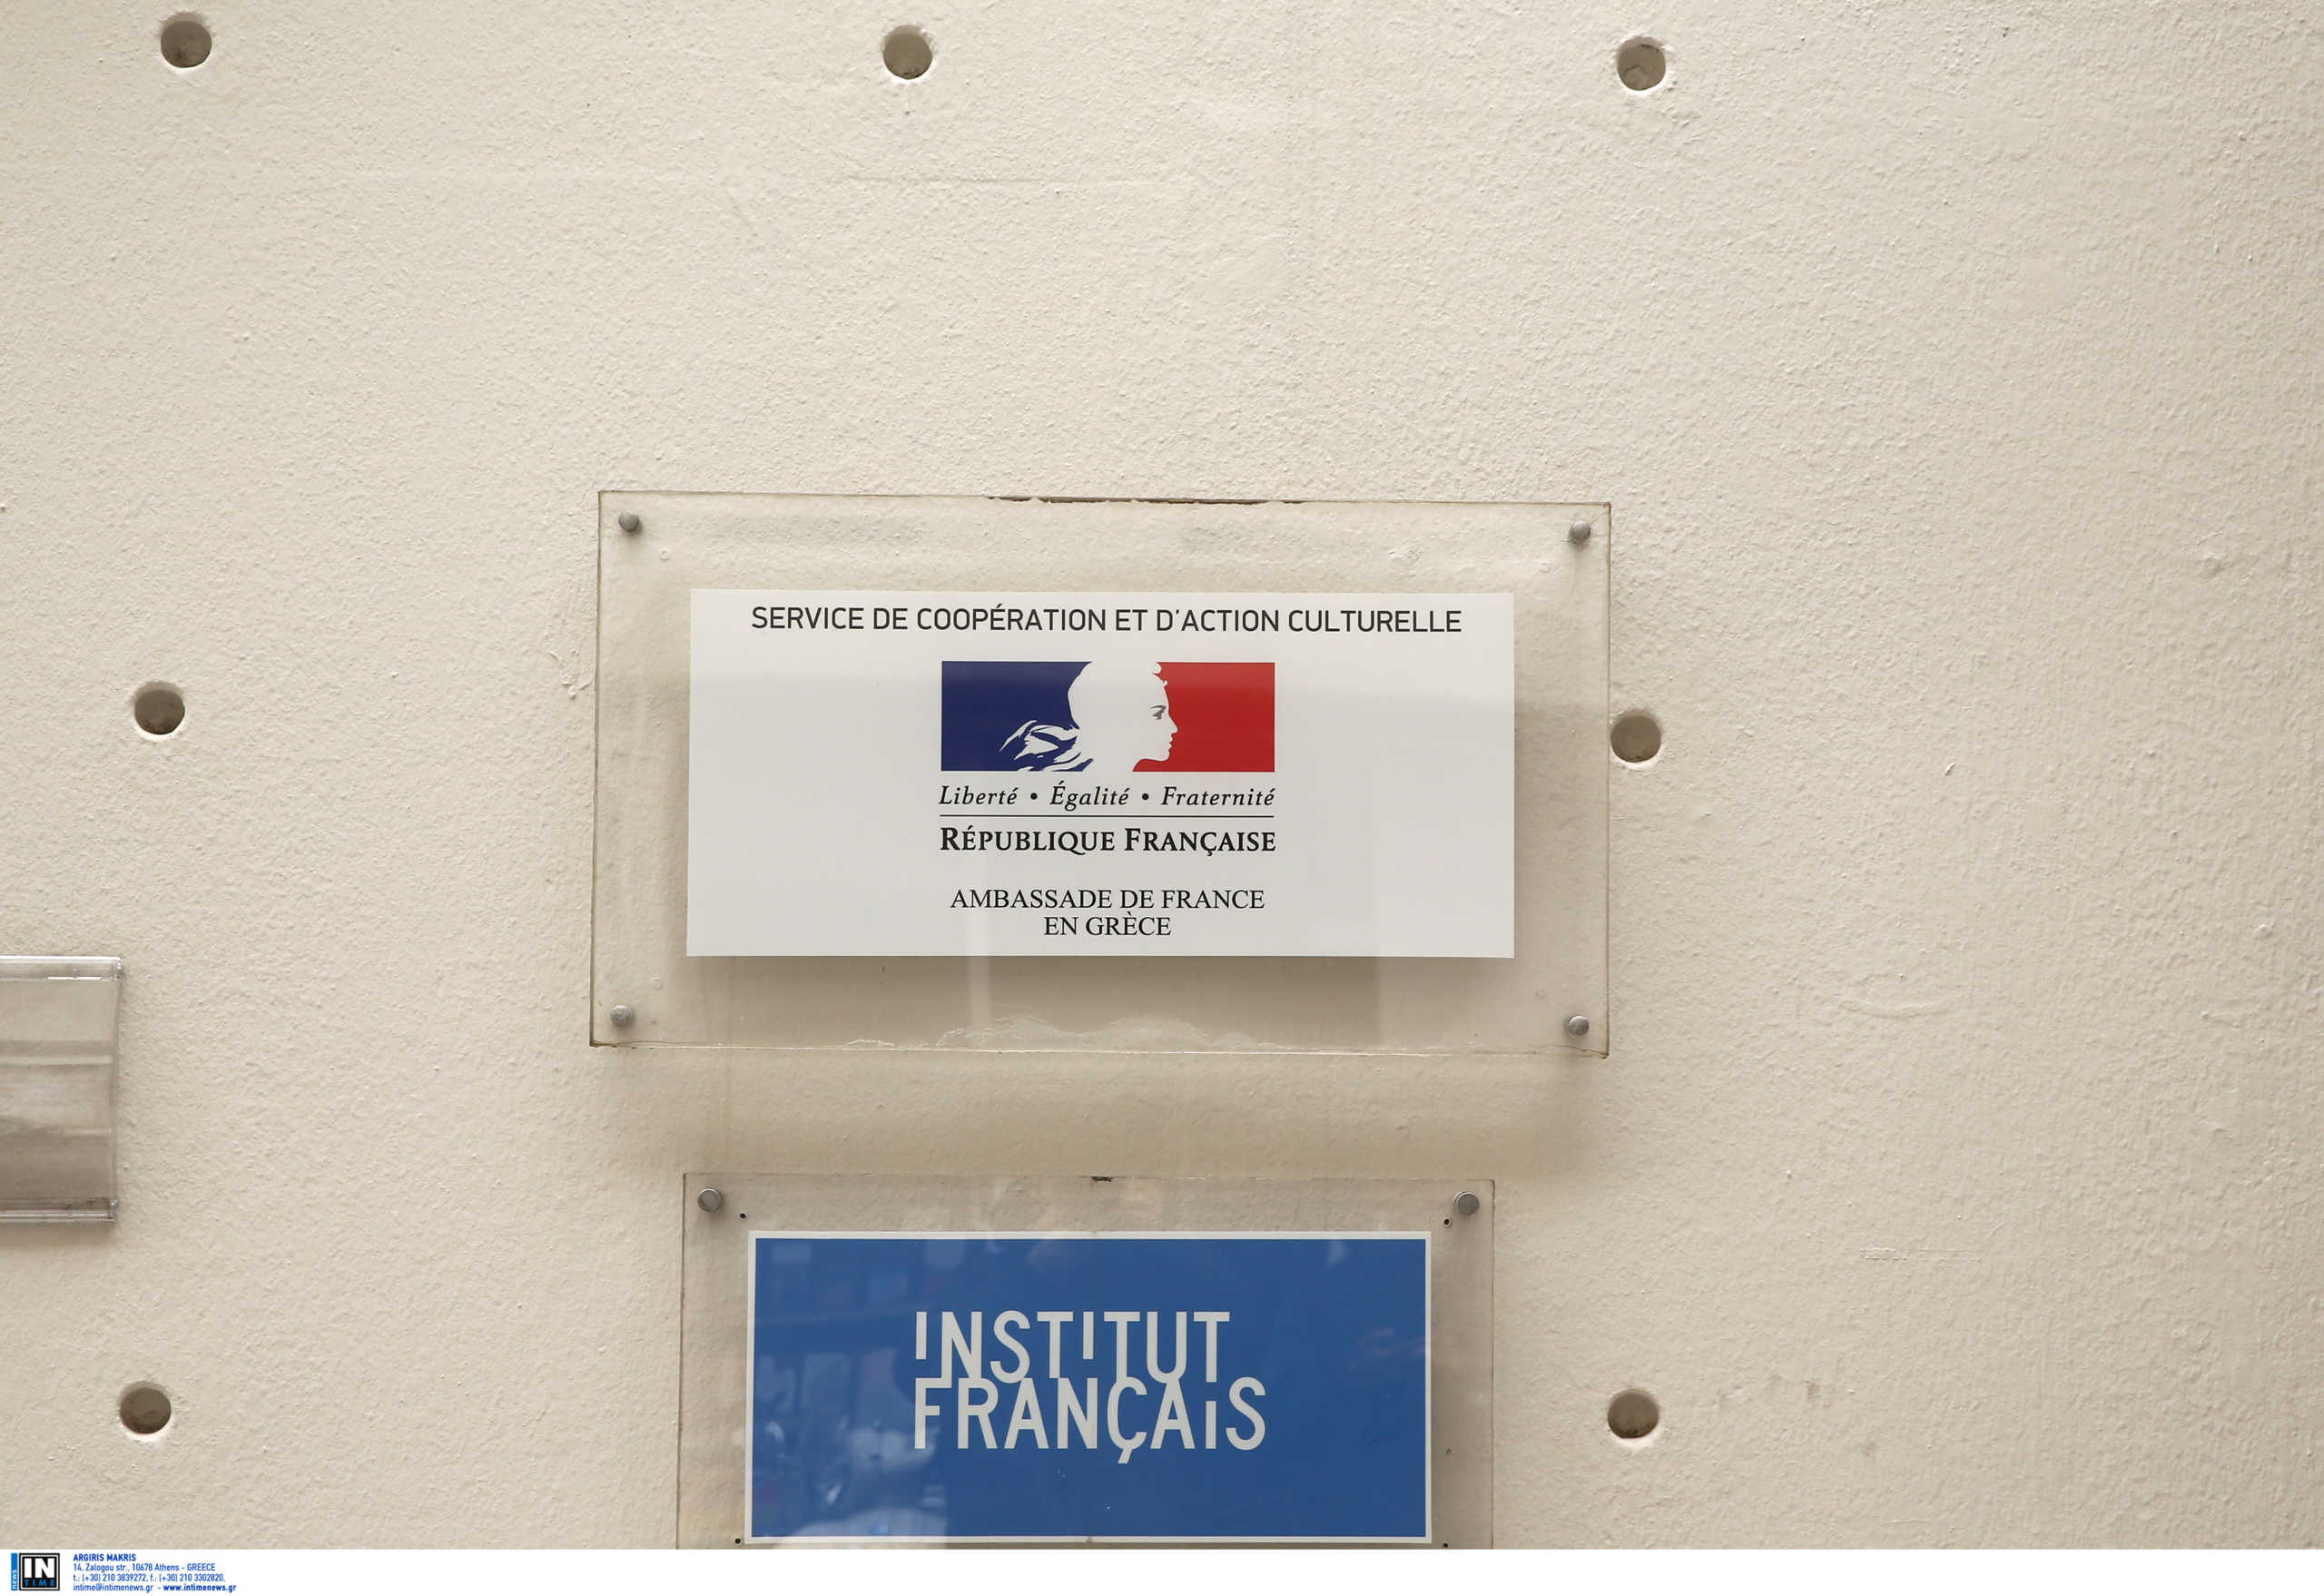 Κλειστό και το Γαλλικό Ινστιτούτο λόγω κορονοϊού